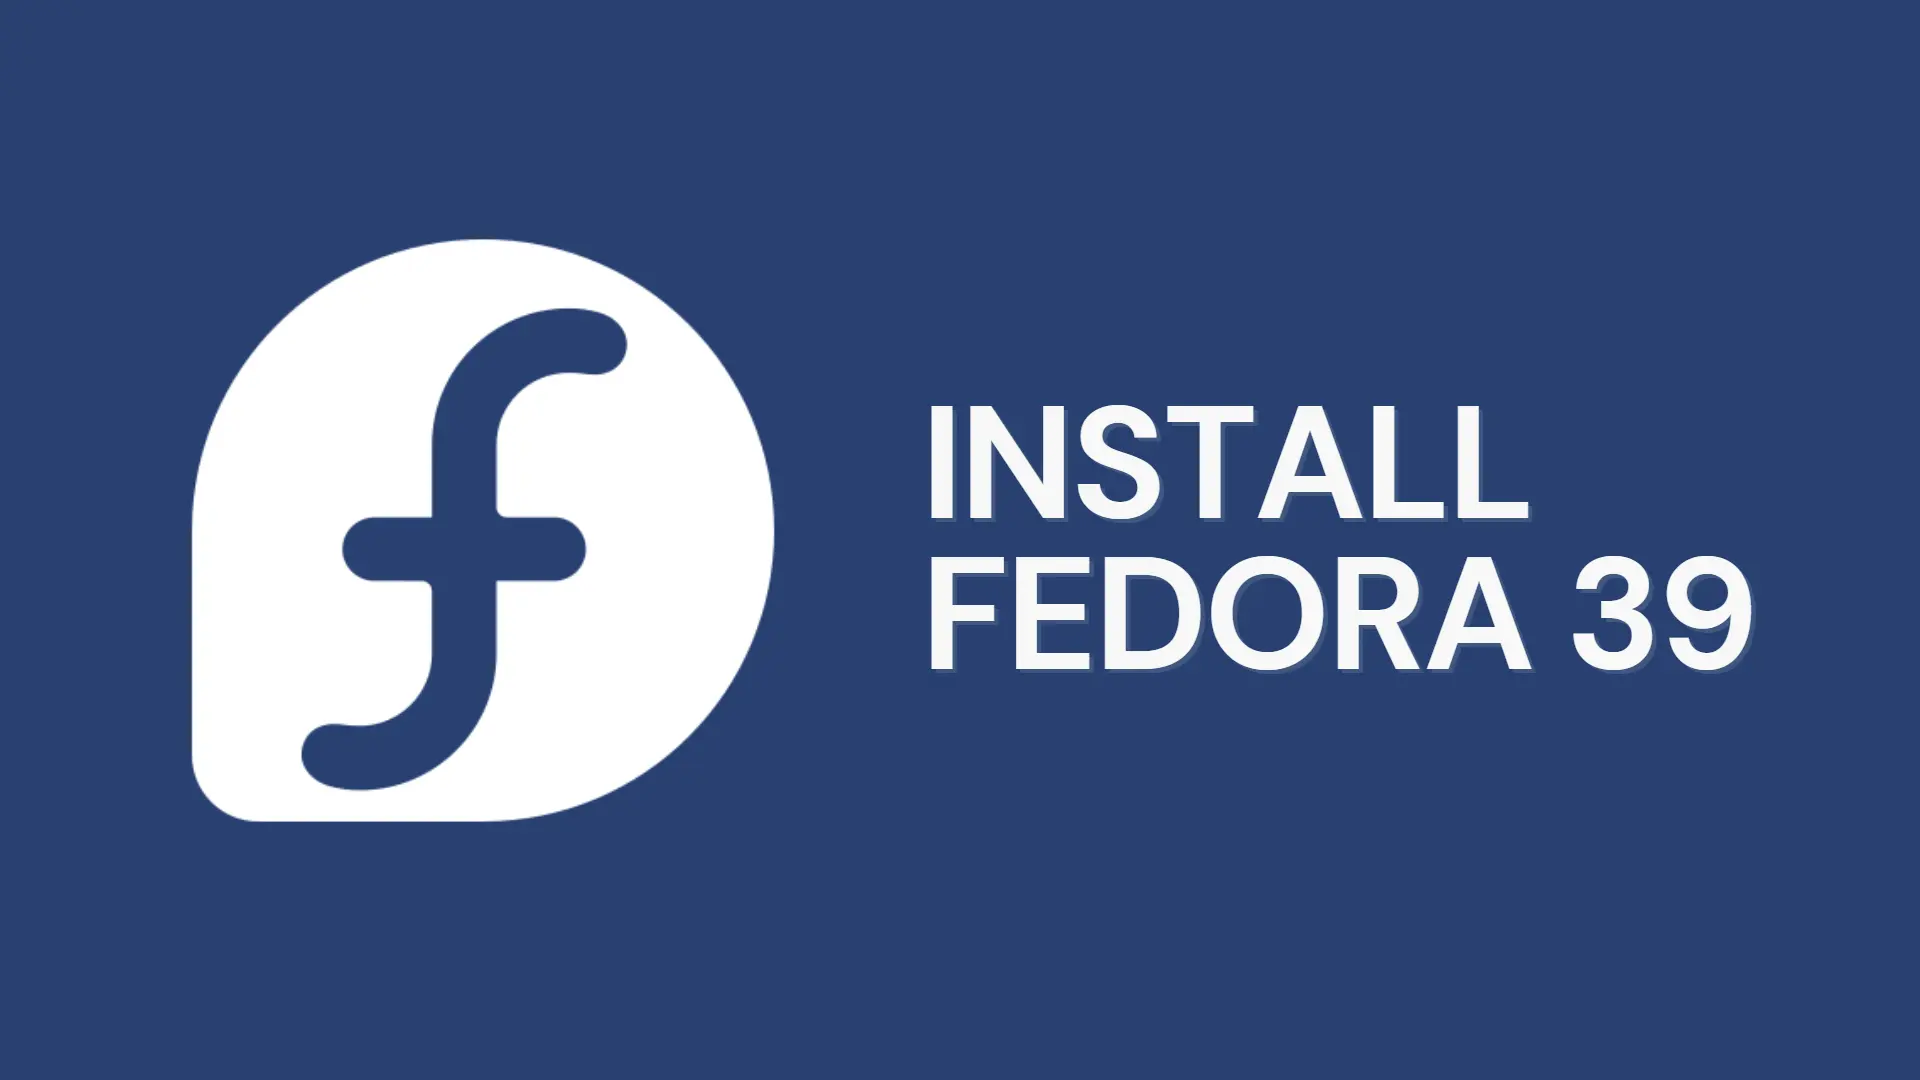 Install RHEL Fedora 39